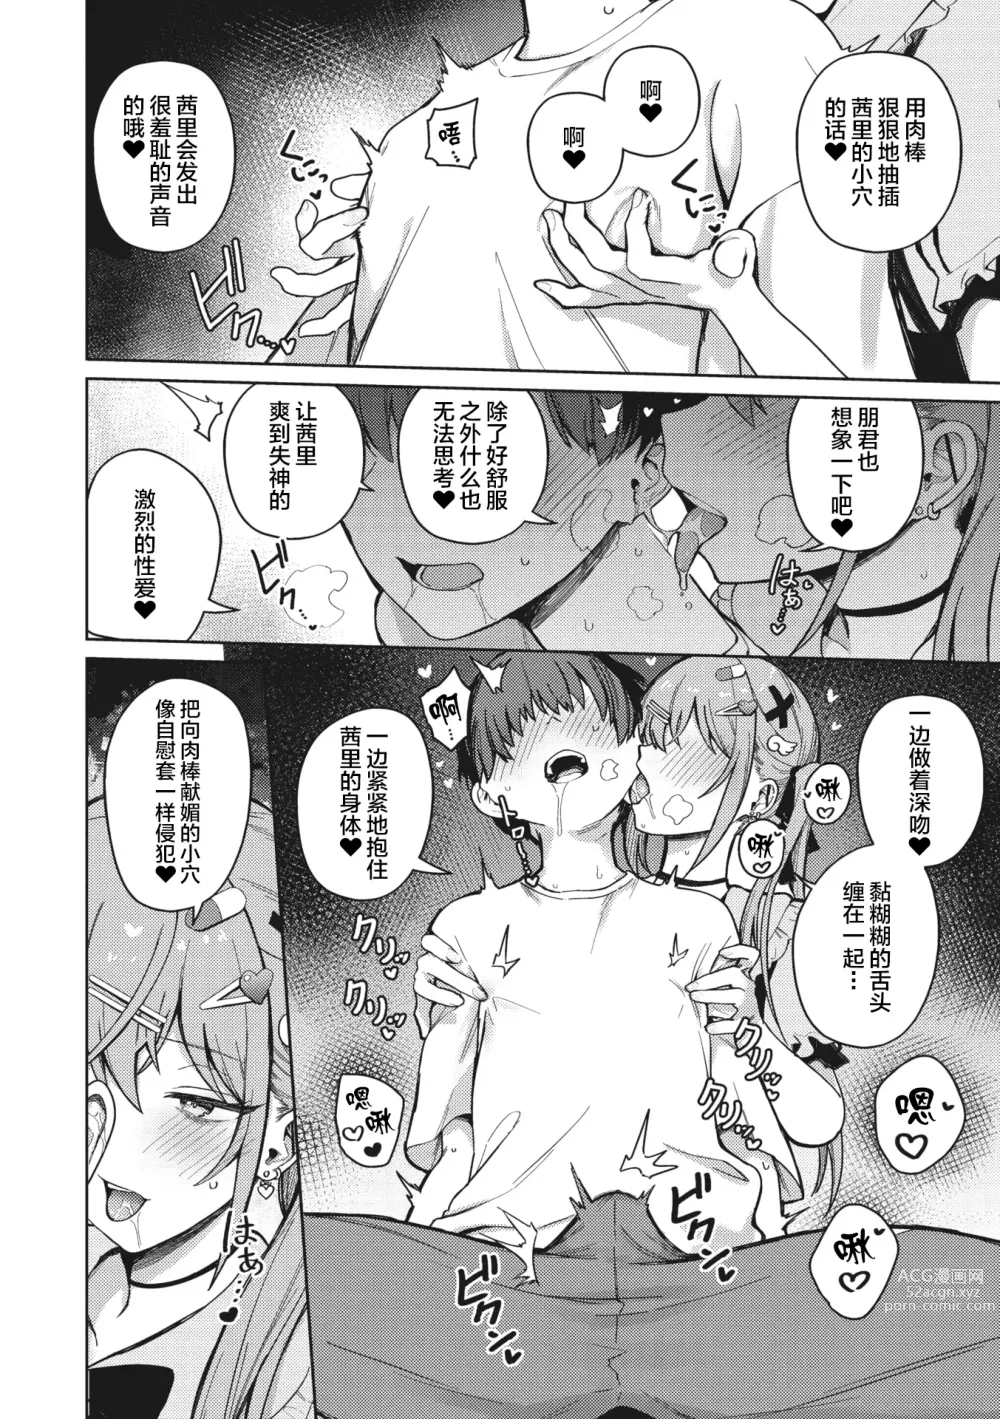 Page 14 of manga Motto! Best Match Mine Girl